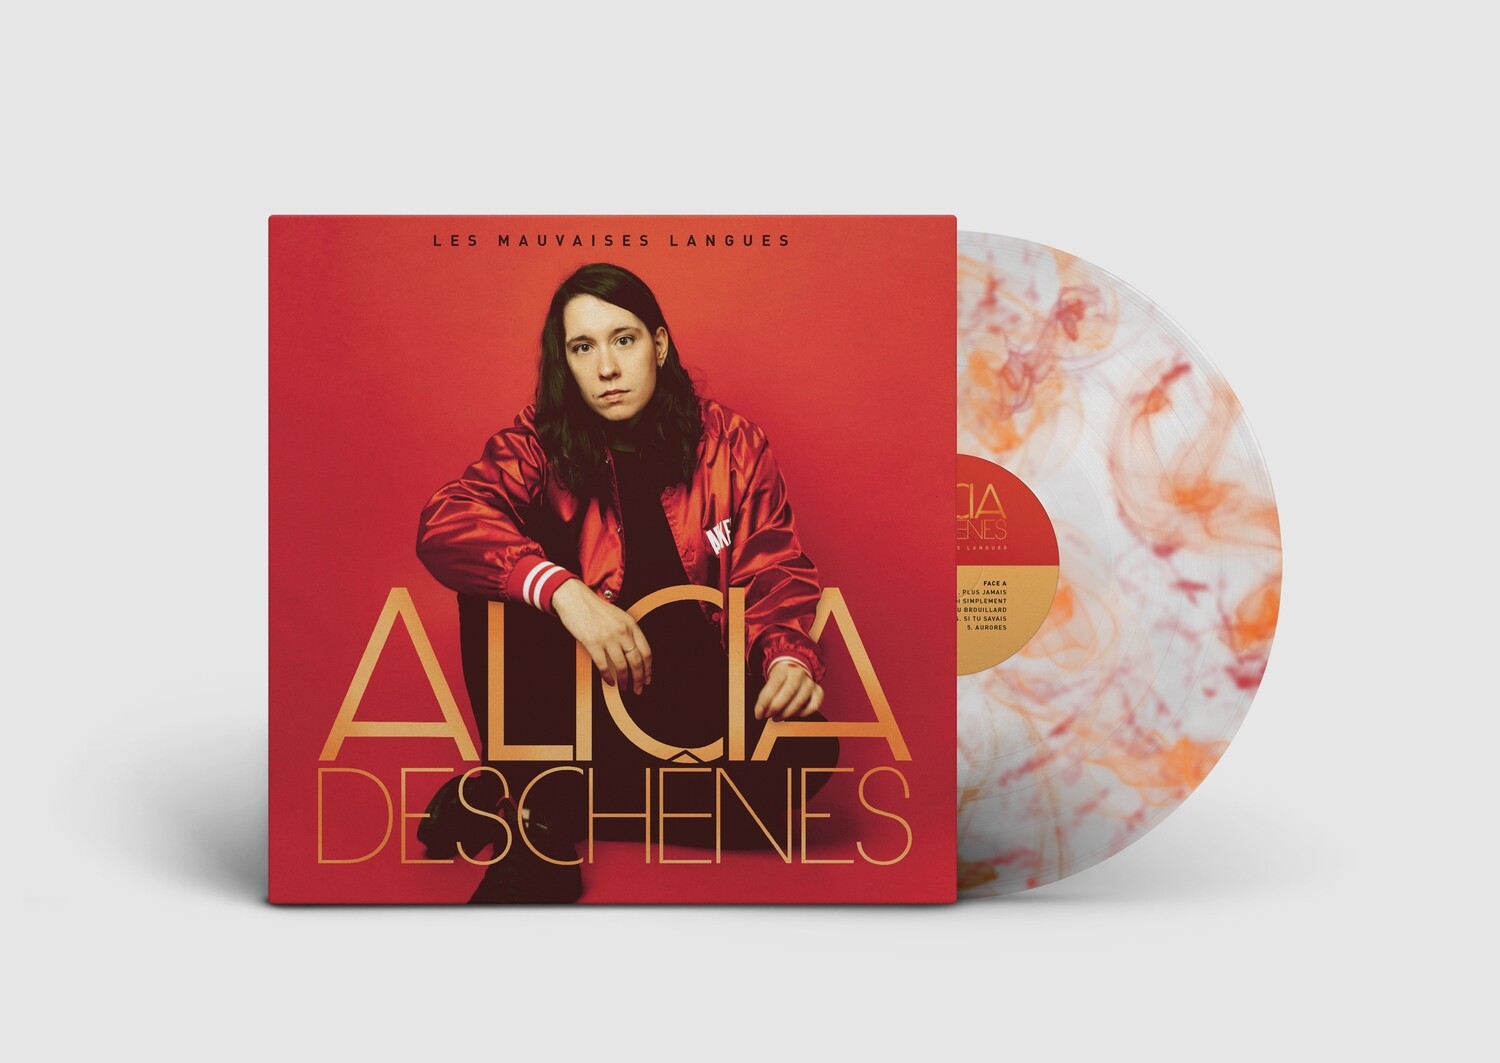 Alicia Deschênes - Les mauvaises langues (album vinyle orange et rouge)